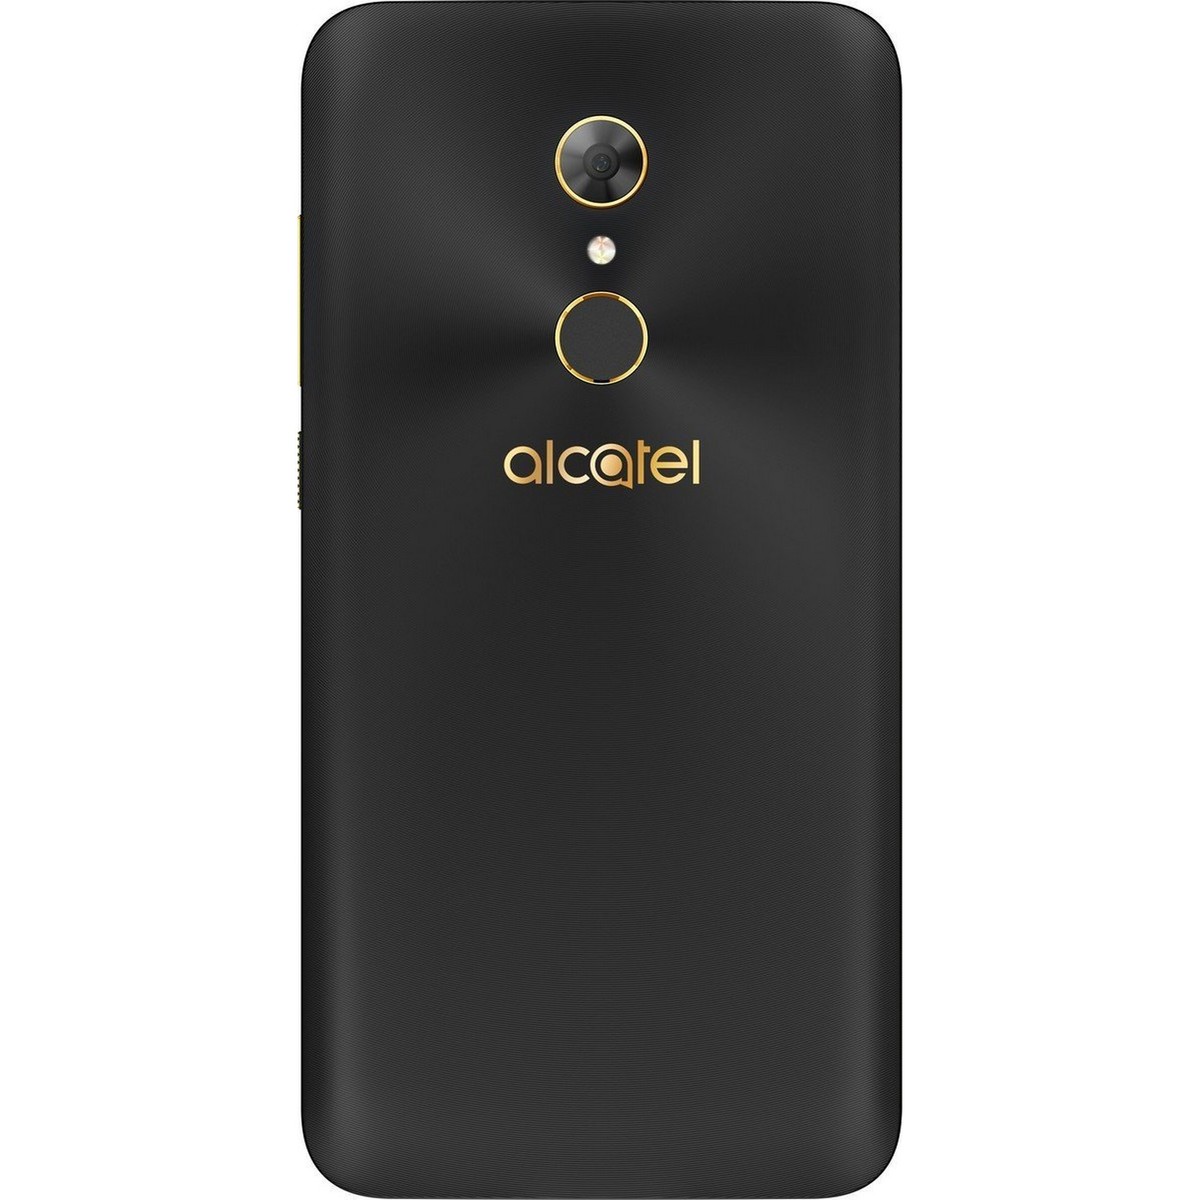 Alcatel A7 5090i 32GB 4G Metallic Black